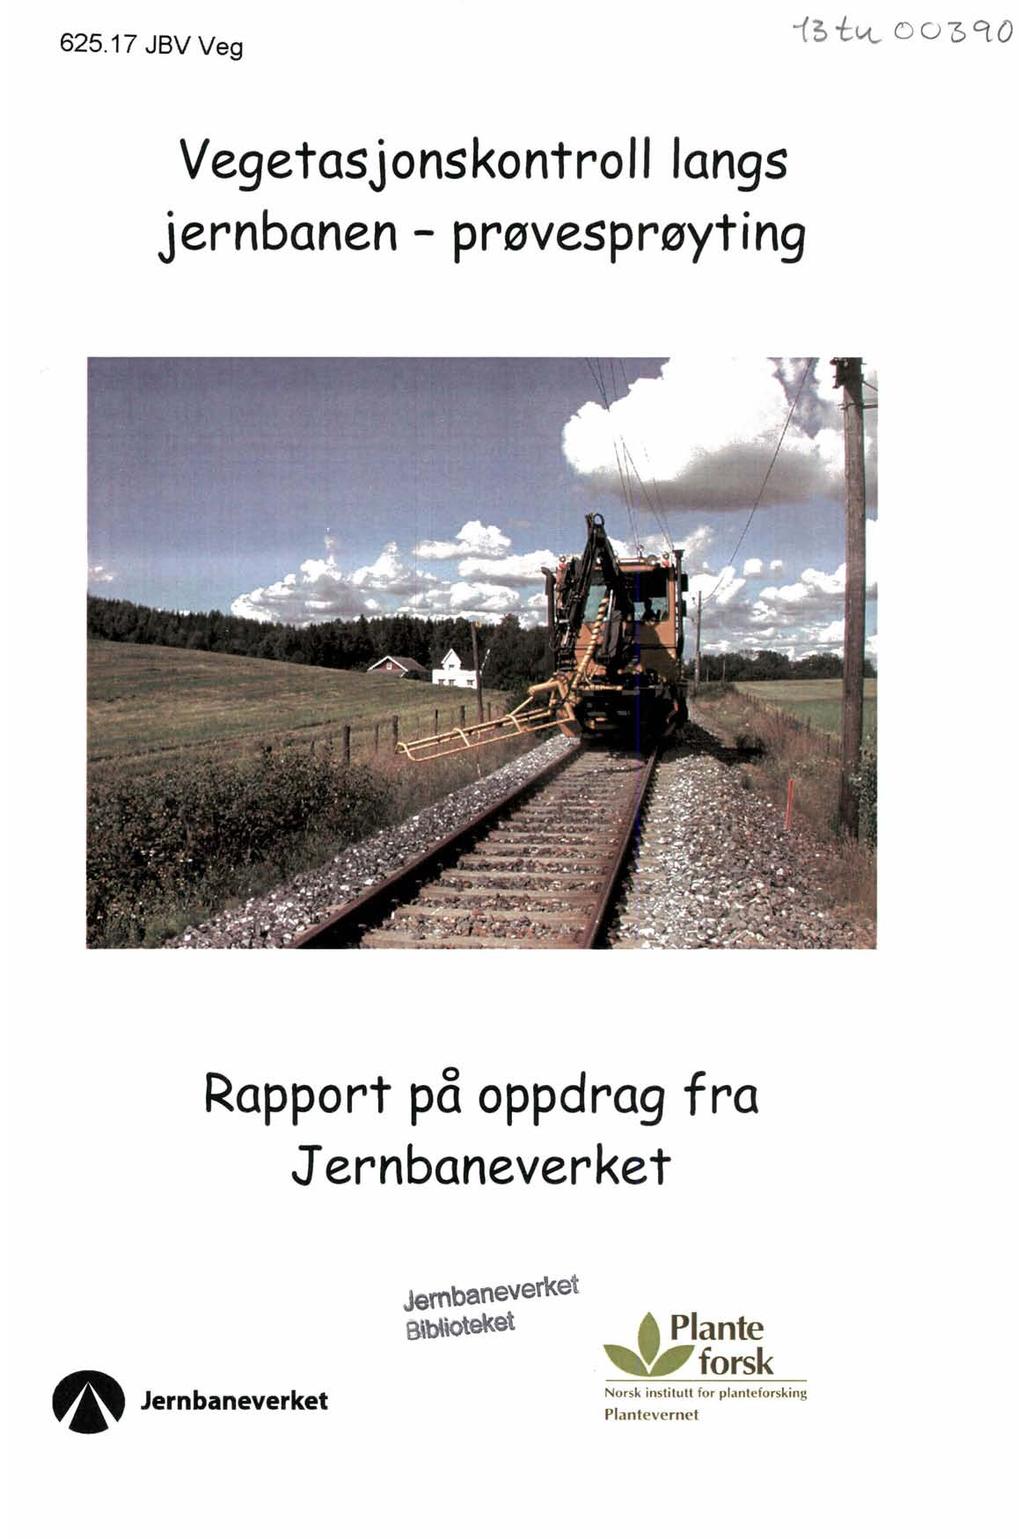 625.17 JBV Veg Vegetasjonskontroll langs jernbanen - prøvesprøyting Rapport på